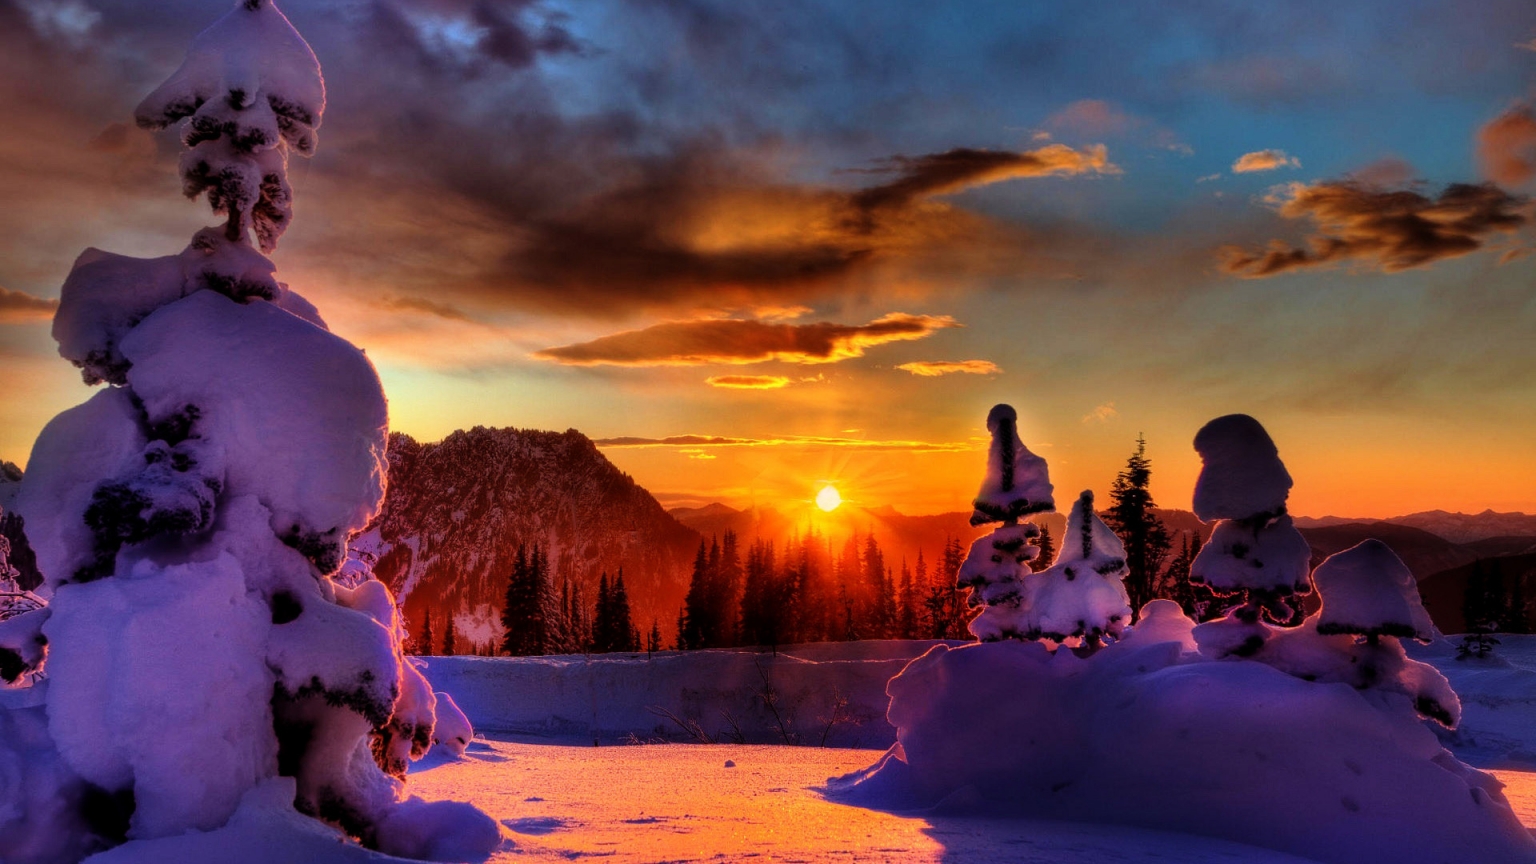 Winter Sunset for 1536 x 864 HDTV resolution